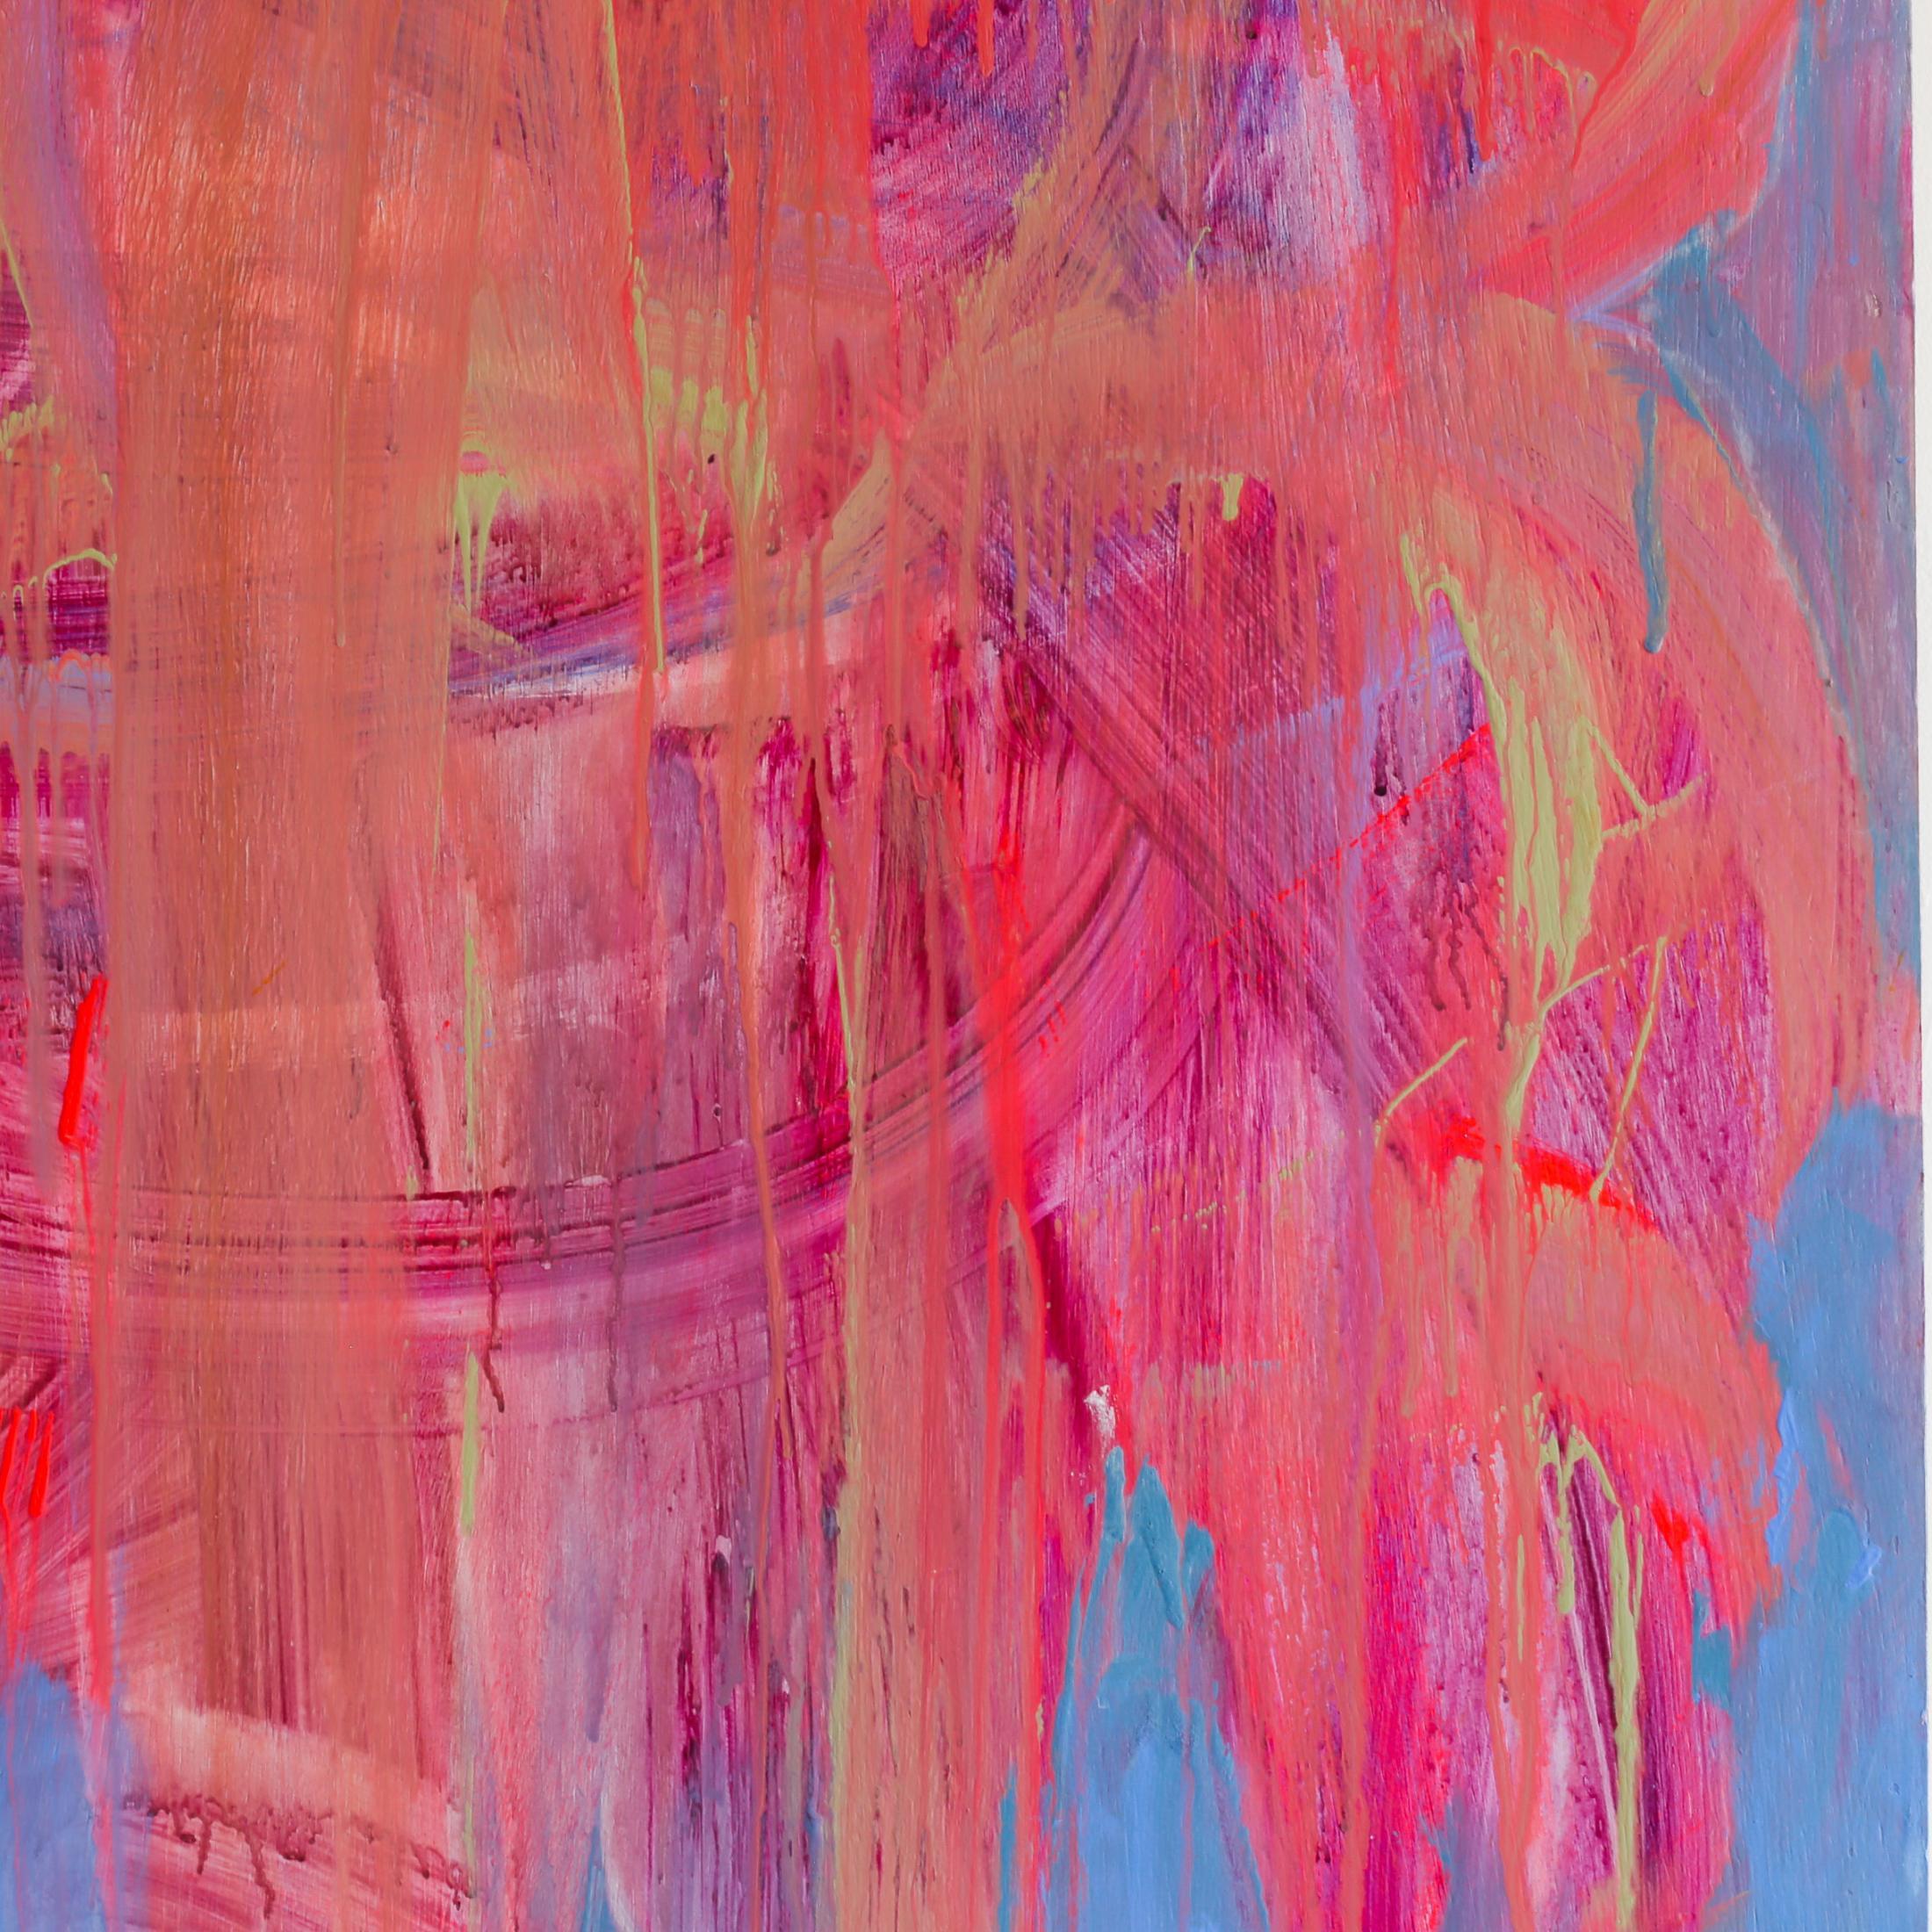 Yum II der Künstlerin Brenda Zappitell ist ein abstraktes Werk in Rosa und hellem Ingigo aus Flash und Acryl mit Kaltwachs auf einer 50 x 50 großen Platte und kostet 14.000 $.

Brenda Zappitell schafft abstrakt-expressionistische Werke, die nicht